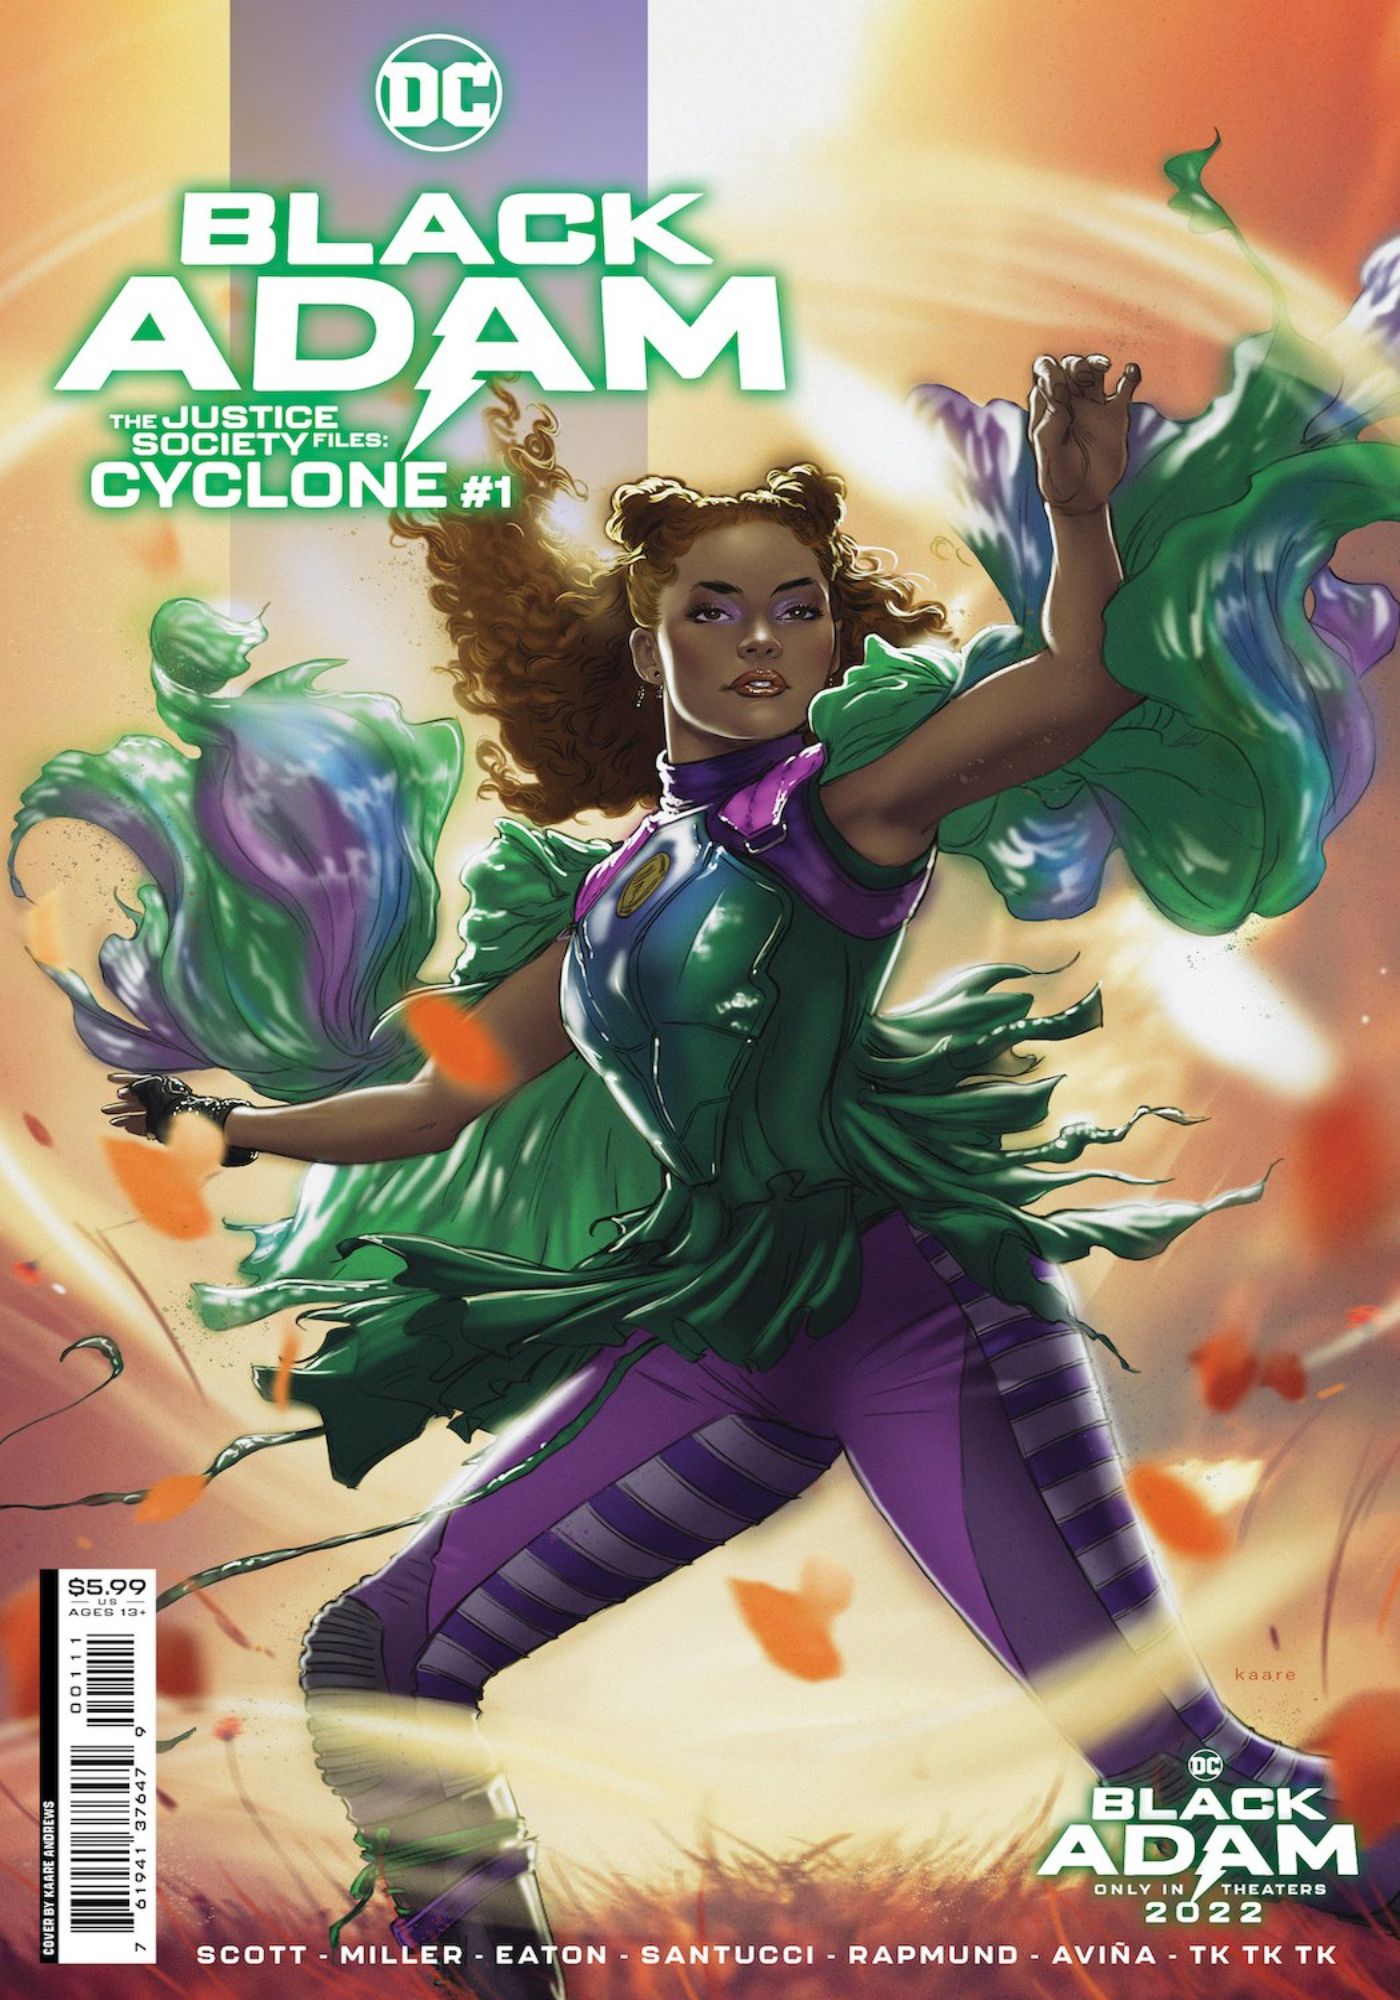 Black Adam Hero Gets Closer Look At Powers & Costume In DC Comics Cover